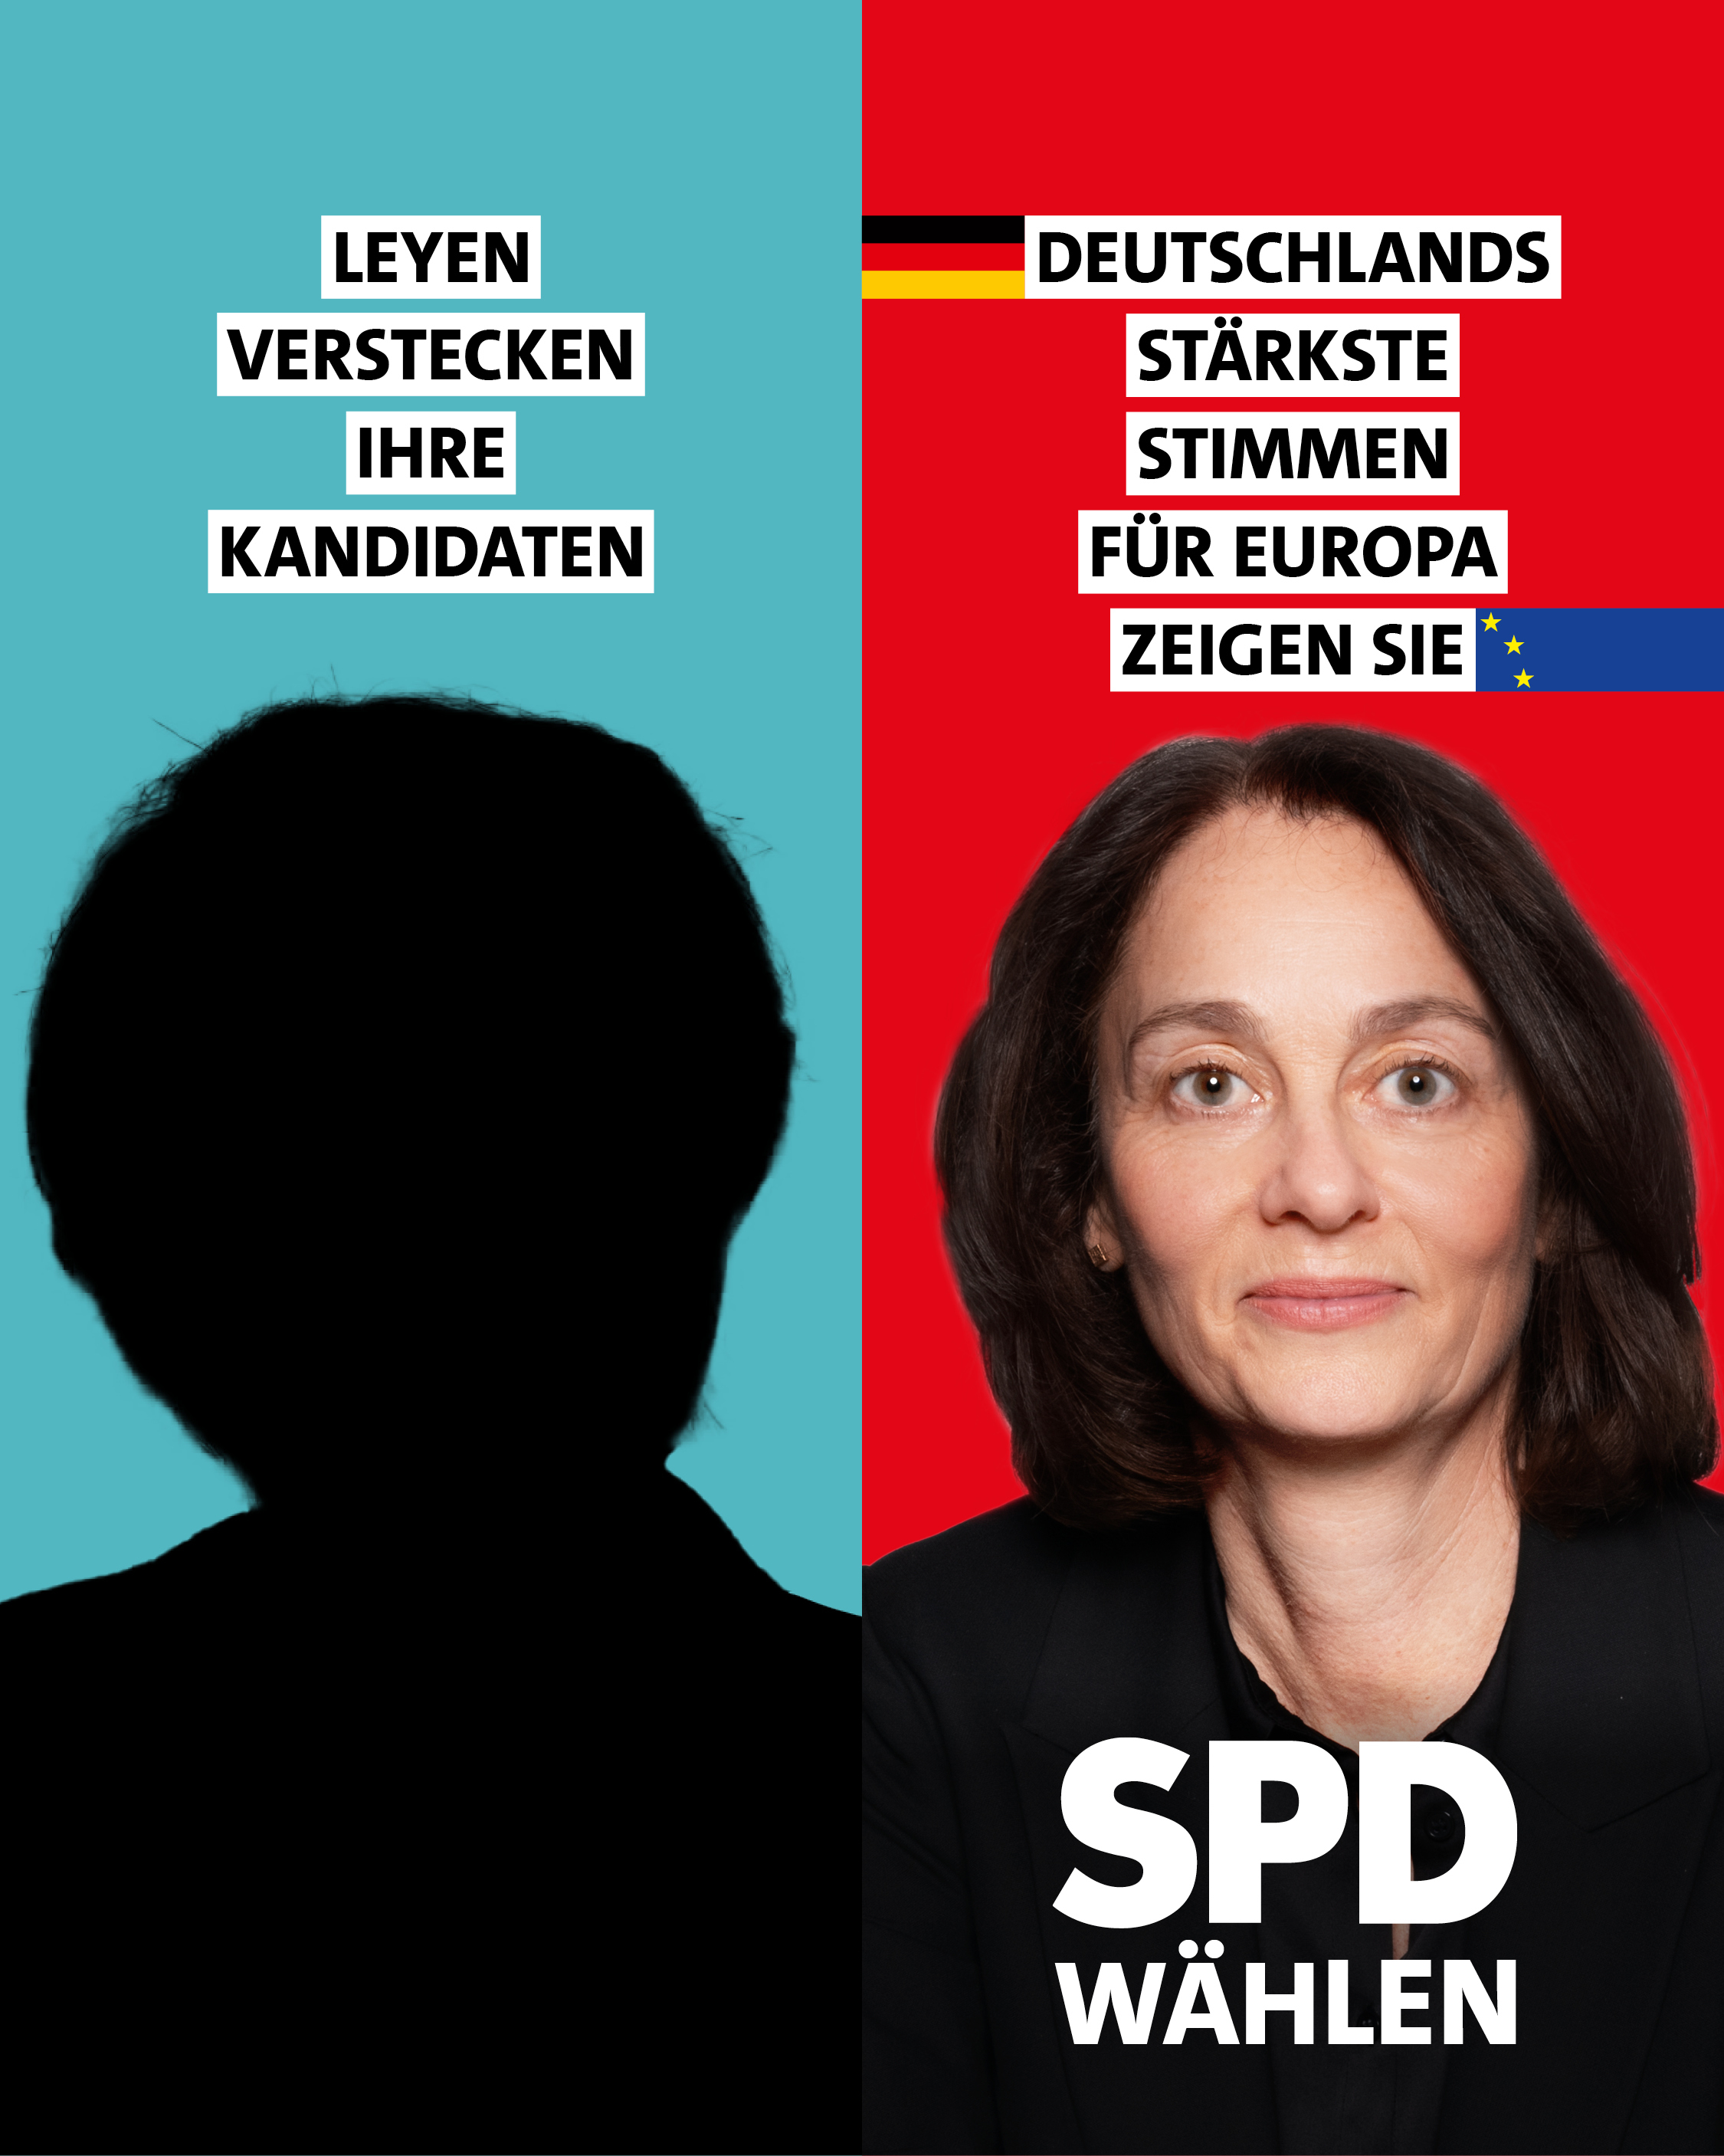 Plakat: Leyen verstecken ihre Kandidaten. Deutschlands stärkste Stimmen für Europa zeigen sie. SPD wählen